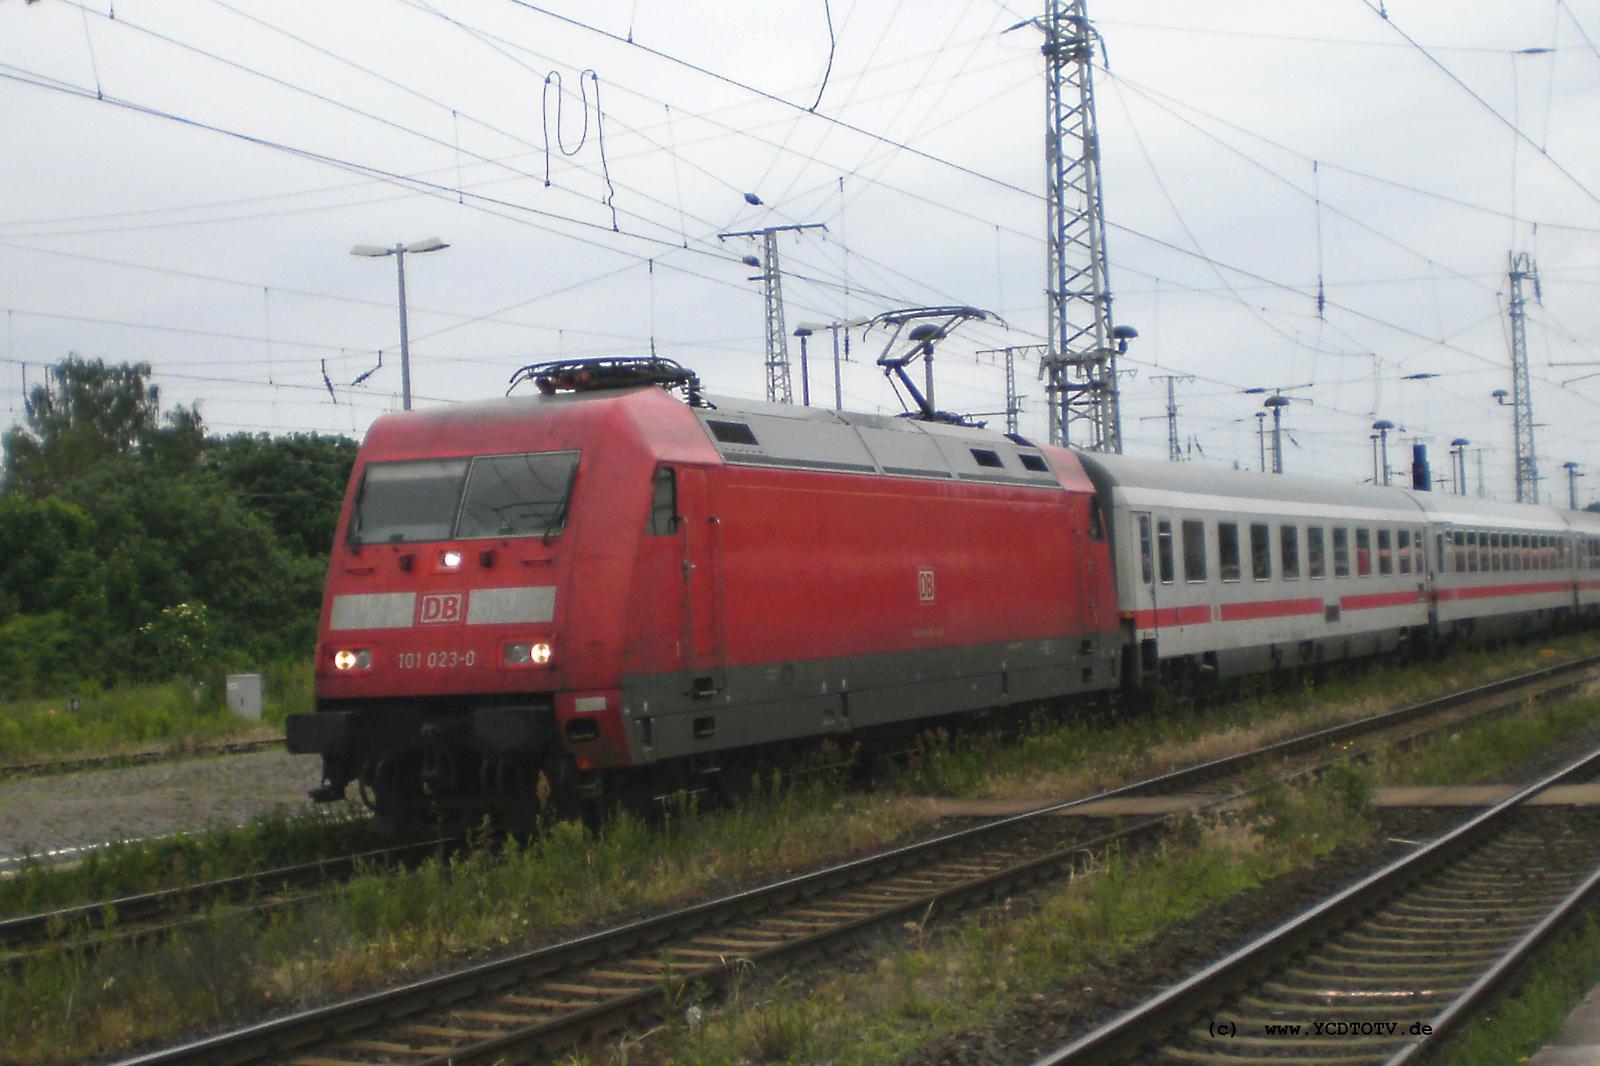 Bahnhof Stendal 12.06.2010  101 023-0